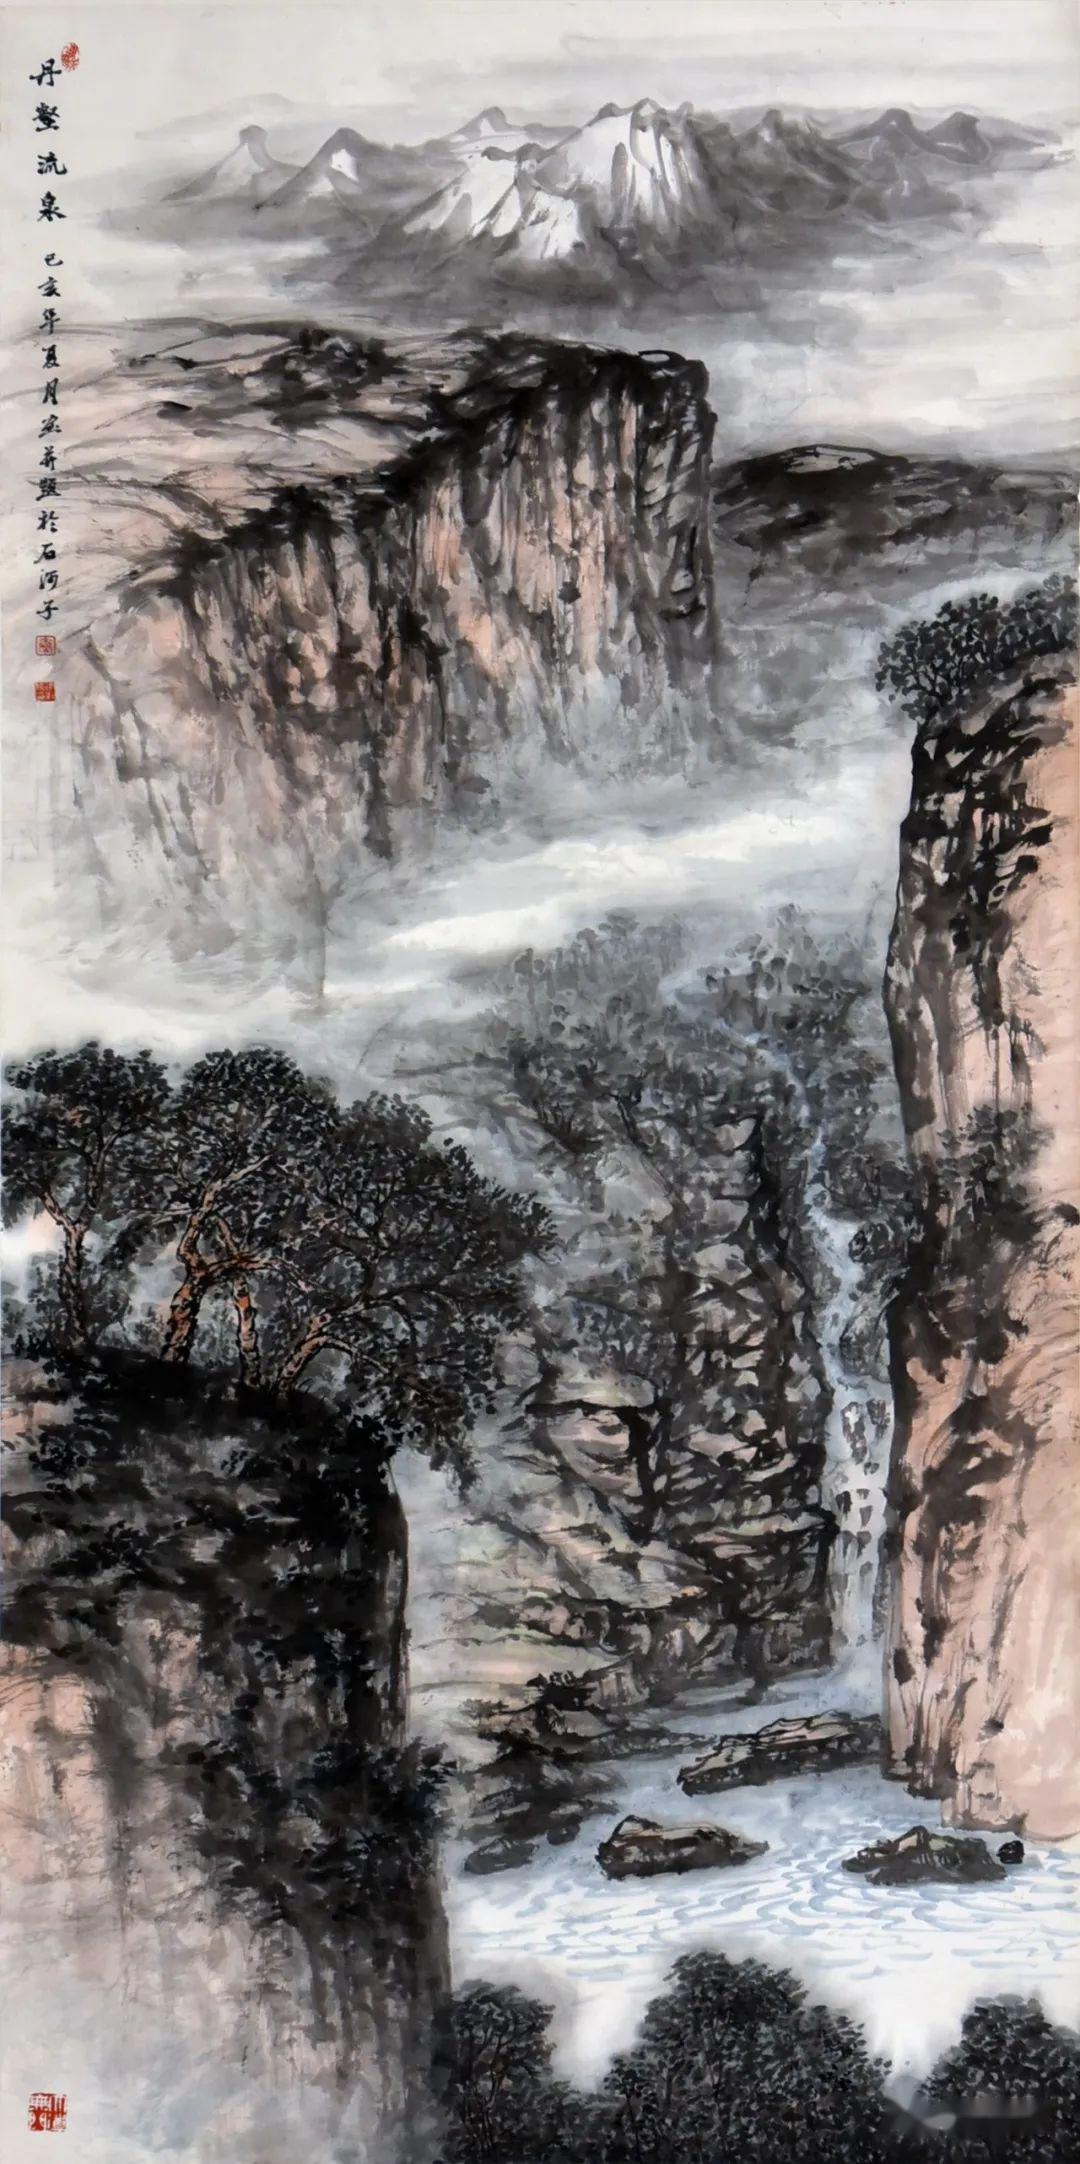 款识:己亥年夏月画并题于石河子  说明:秦建新,中国美术家协会理